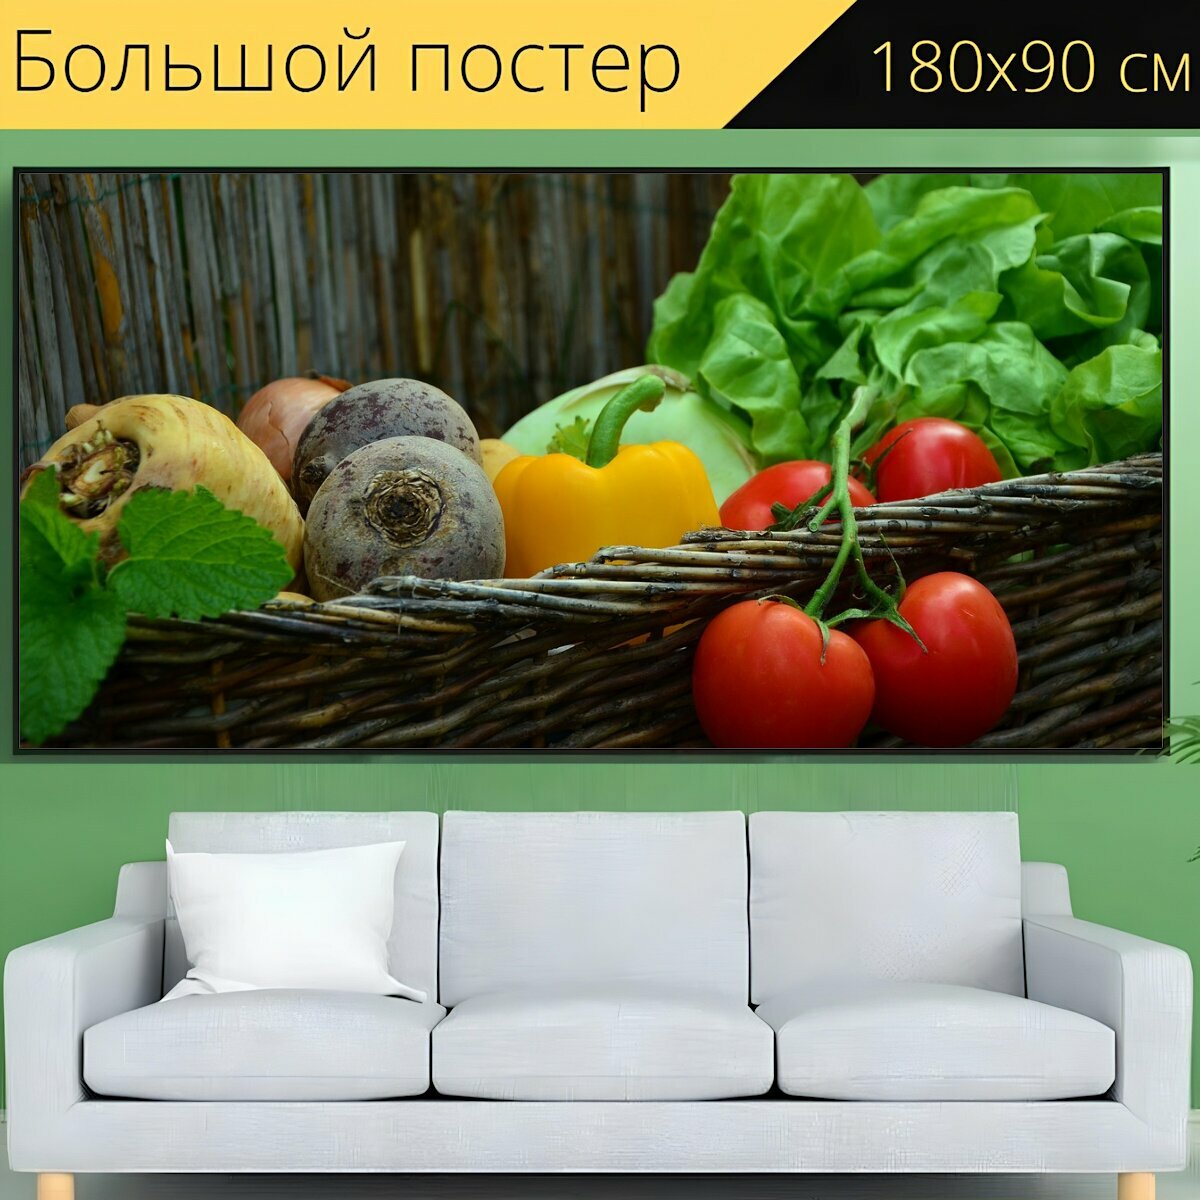 Большой постер "Овощи, помидоры, овощная корзина" 180 x 90 см. для интерьера